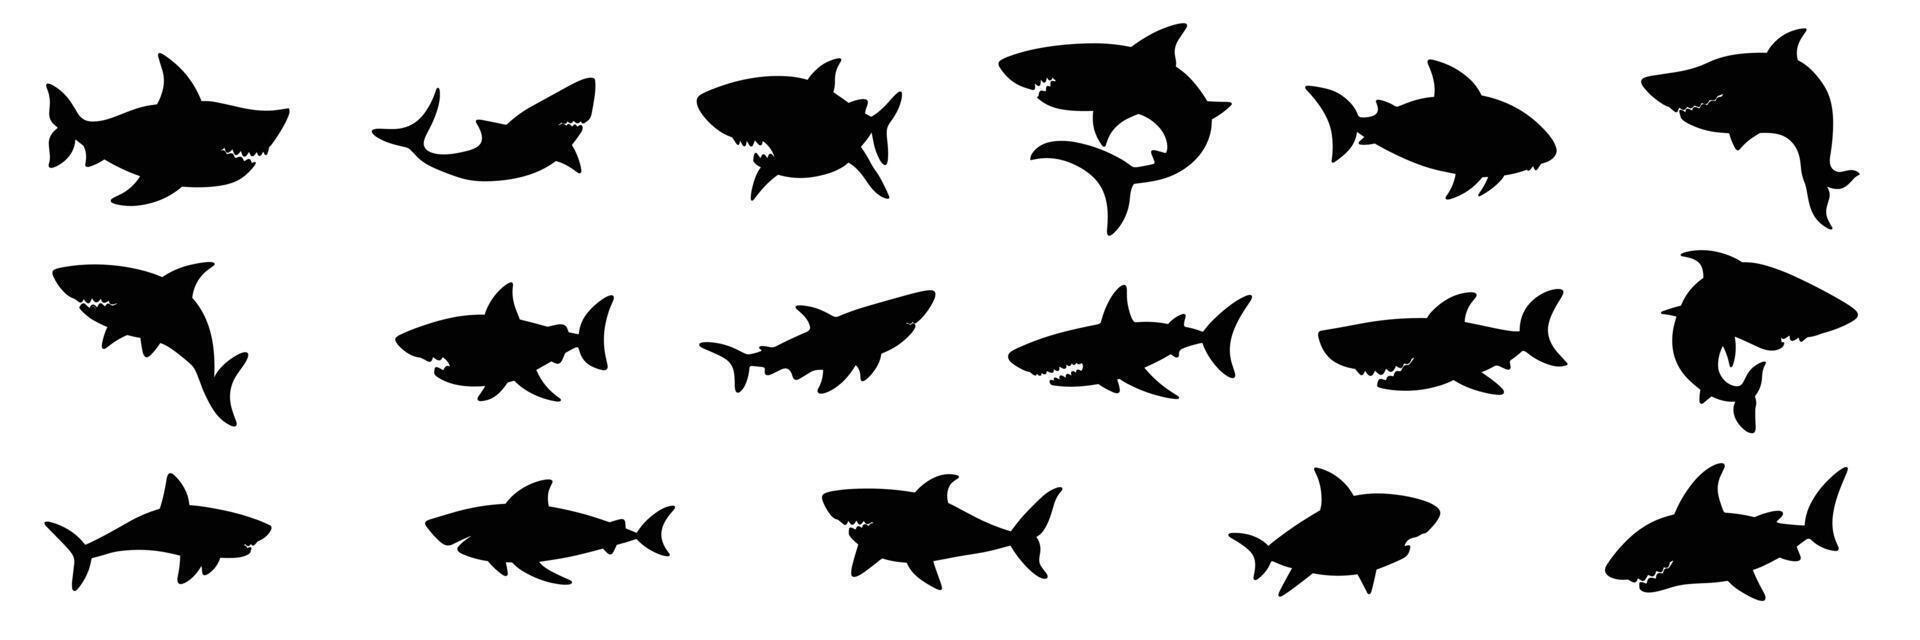 grande coleção do Tubarão silhueta. mão desenhado arte. vetor